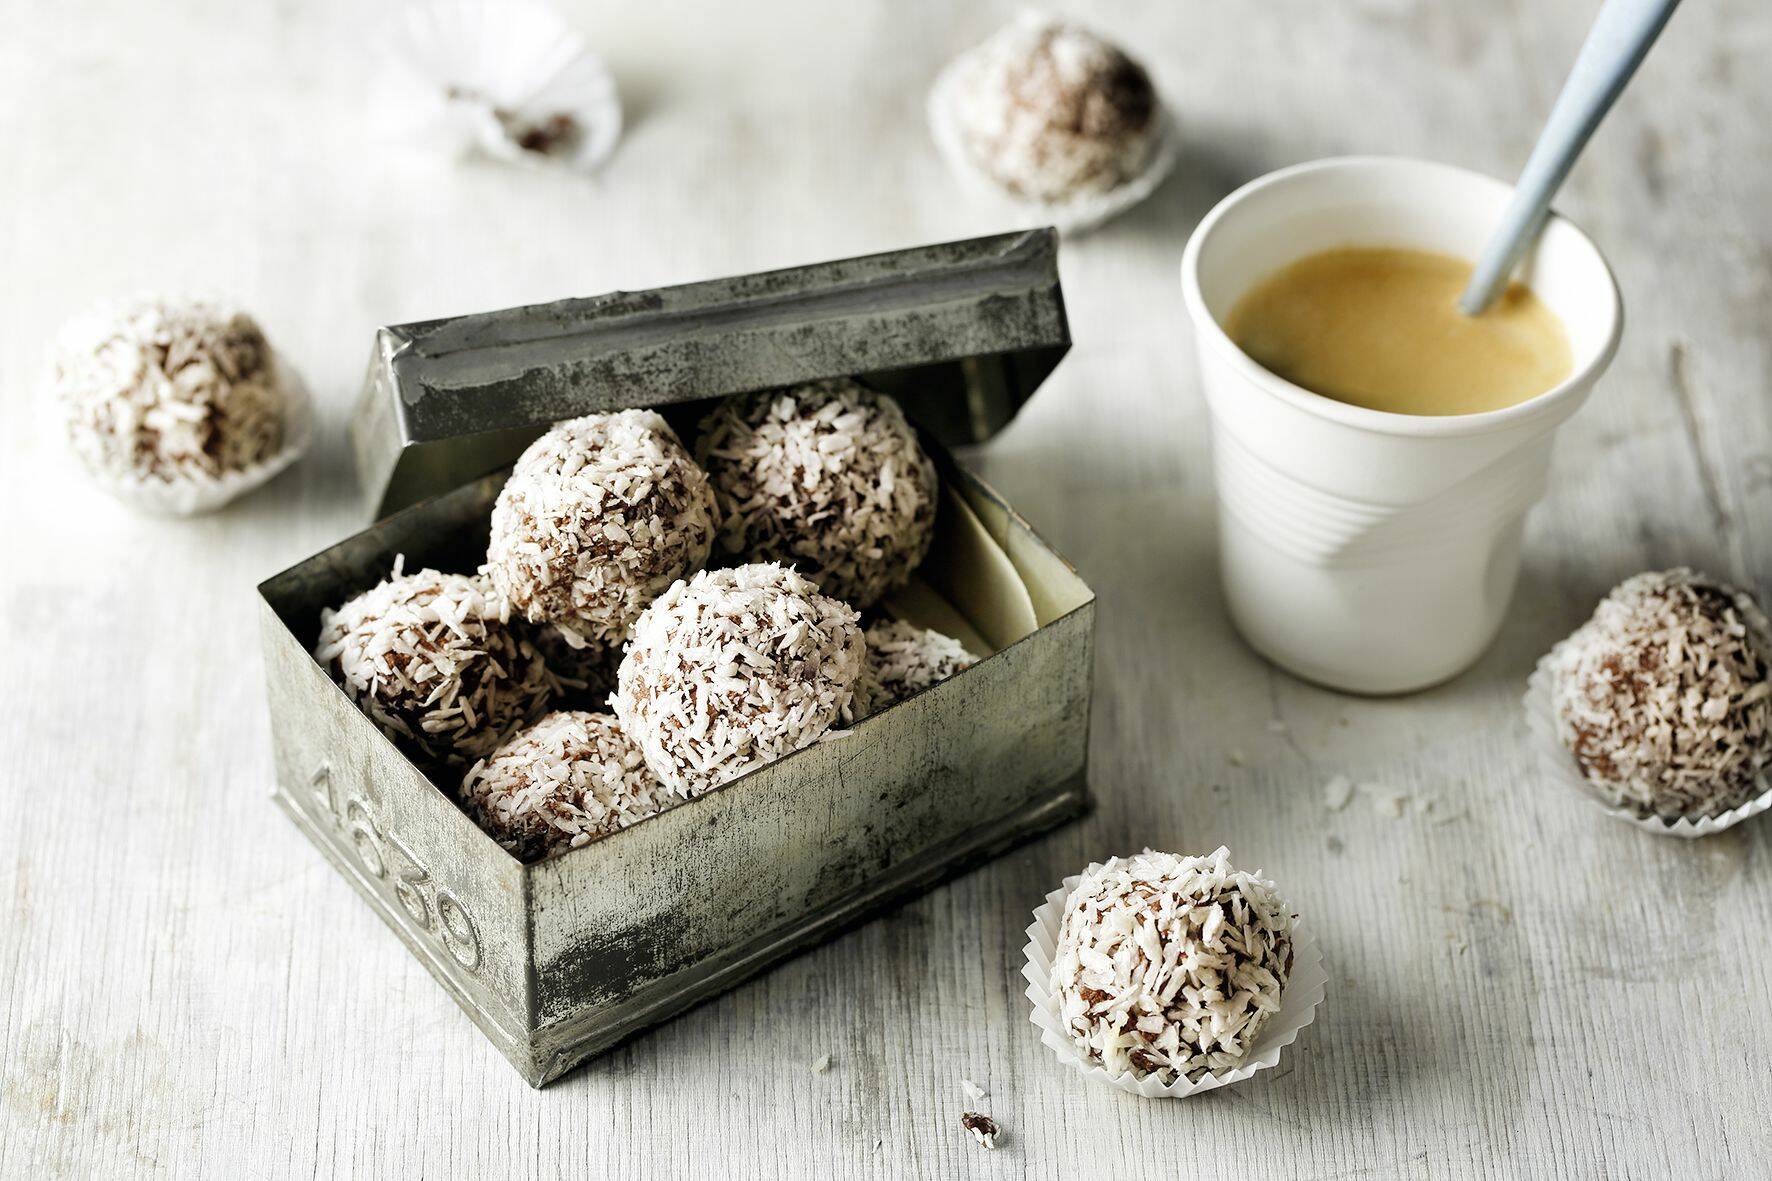 Vanille Schoko Kokos Muffins Vegan Schokolad — Rezepte Suchen